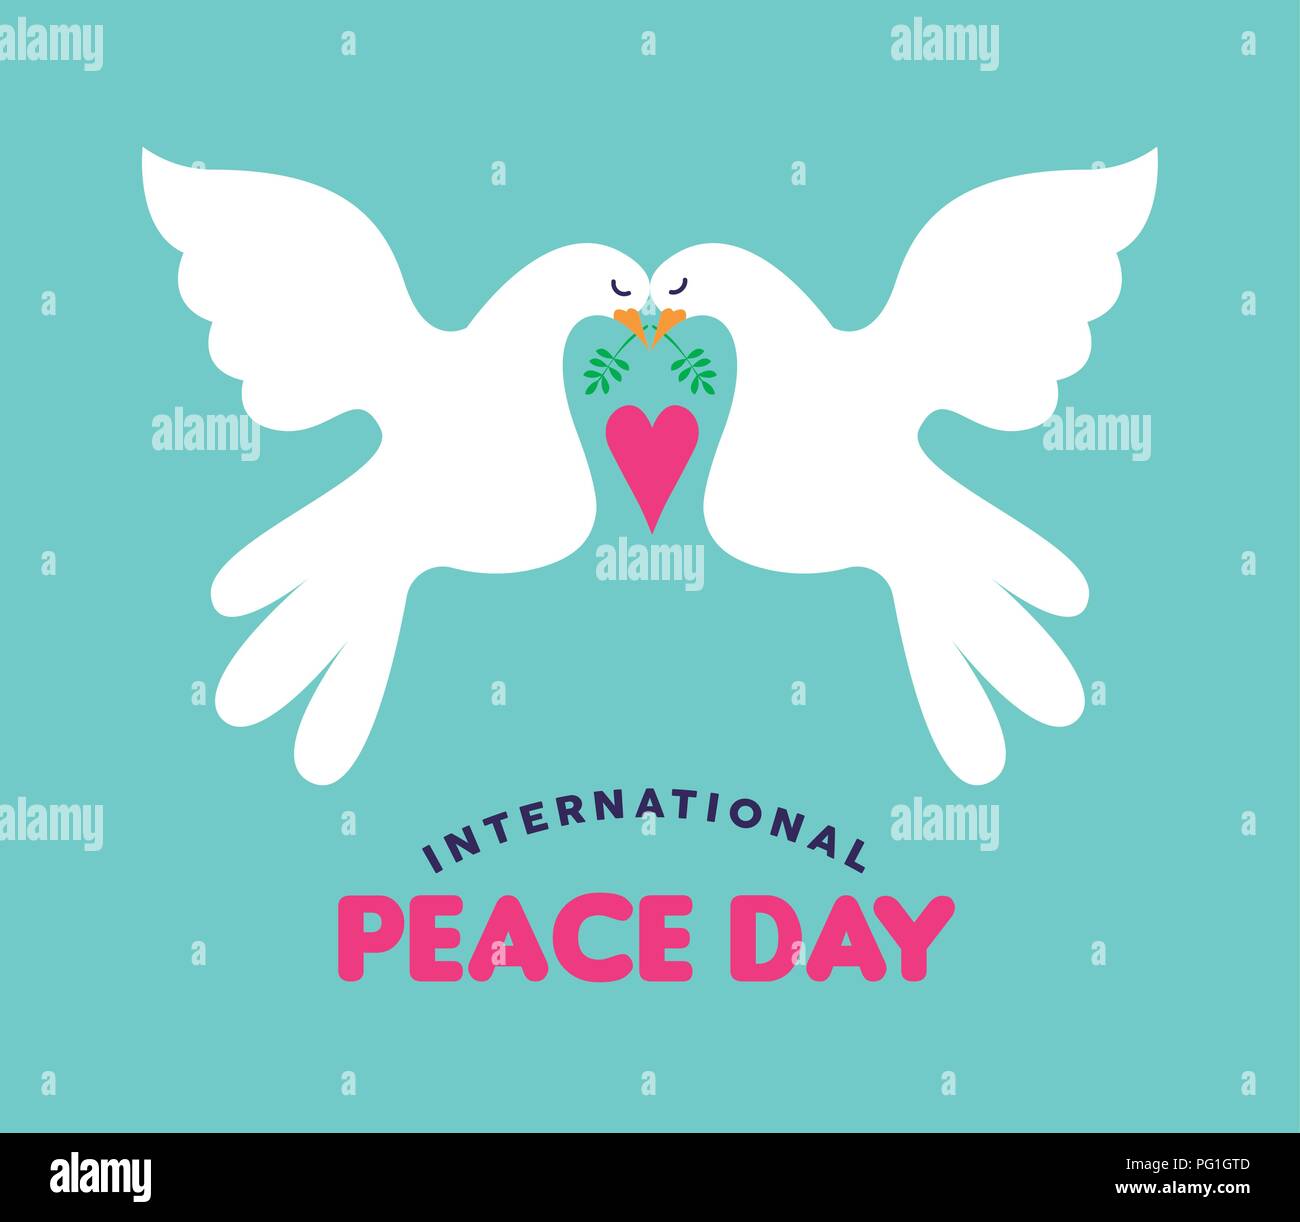 Internationaler Friedenstag Abbildung: weiße Tauben paar Falling in Love. Hand stil Konzept Design gezeichnet Grußkarte für globales Ereignis friedliche ce Stock Vektor